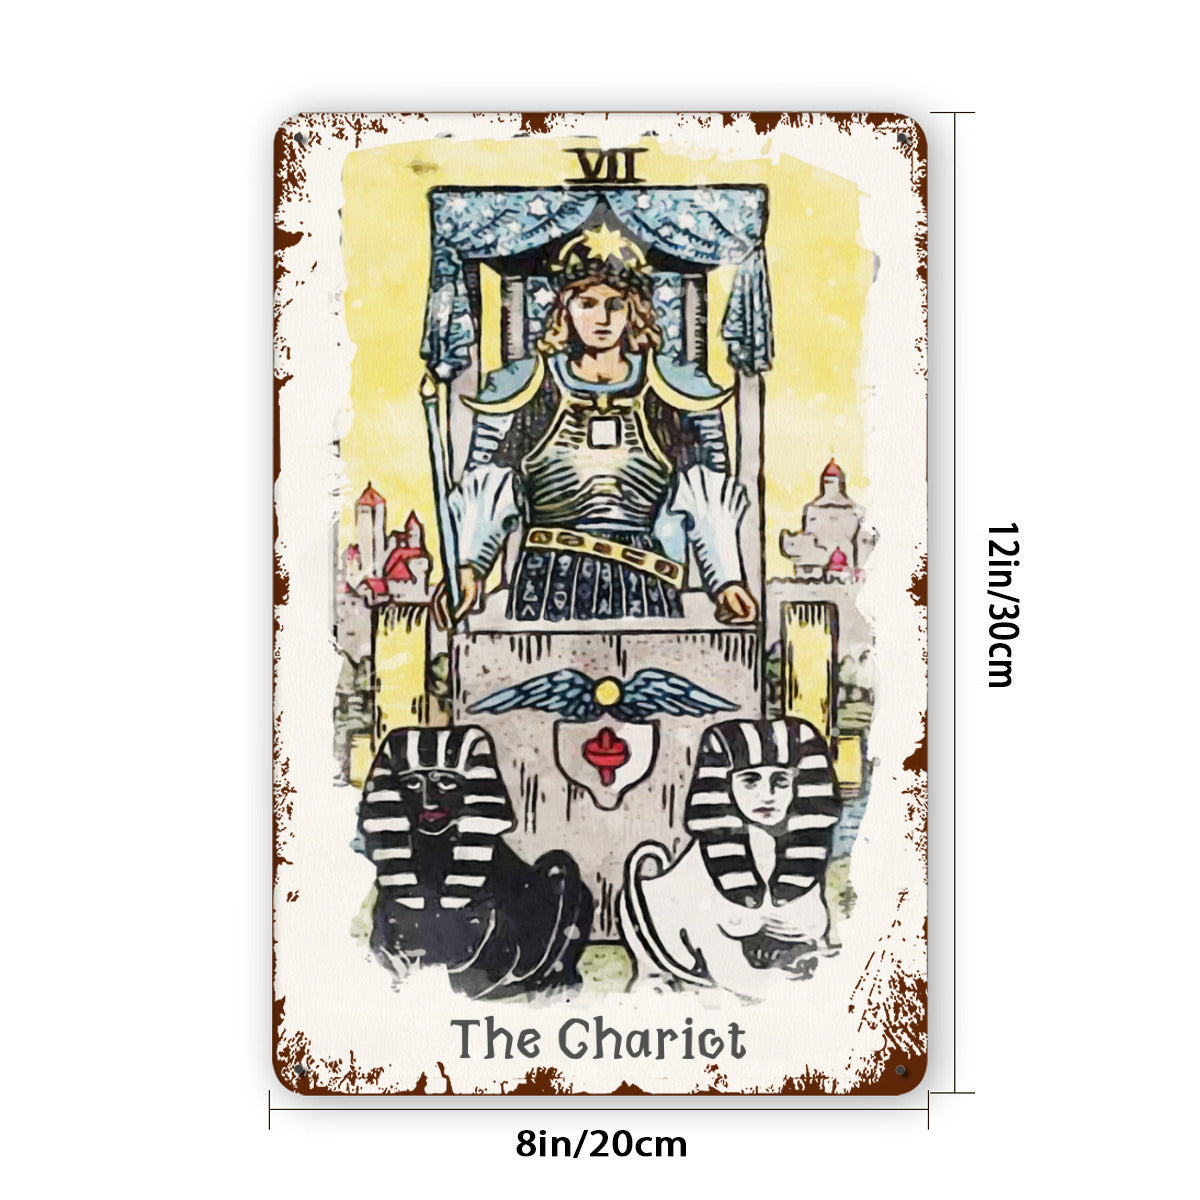 Tin Sign Of The Chariot Tarot Card Painting • Major Arcana Waite-Style Cards Vintage Metal Print • Apollo Tarot Design Shop